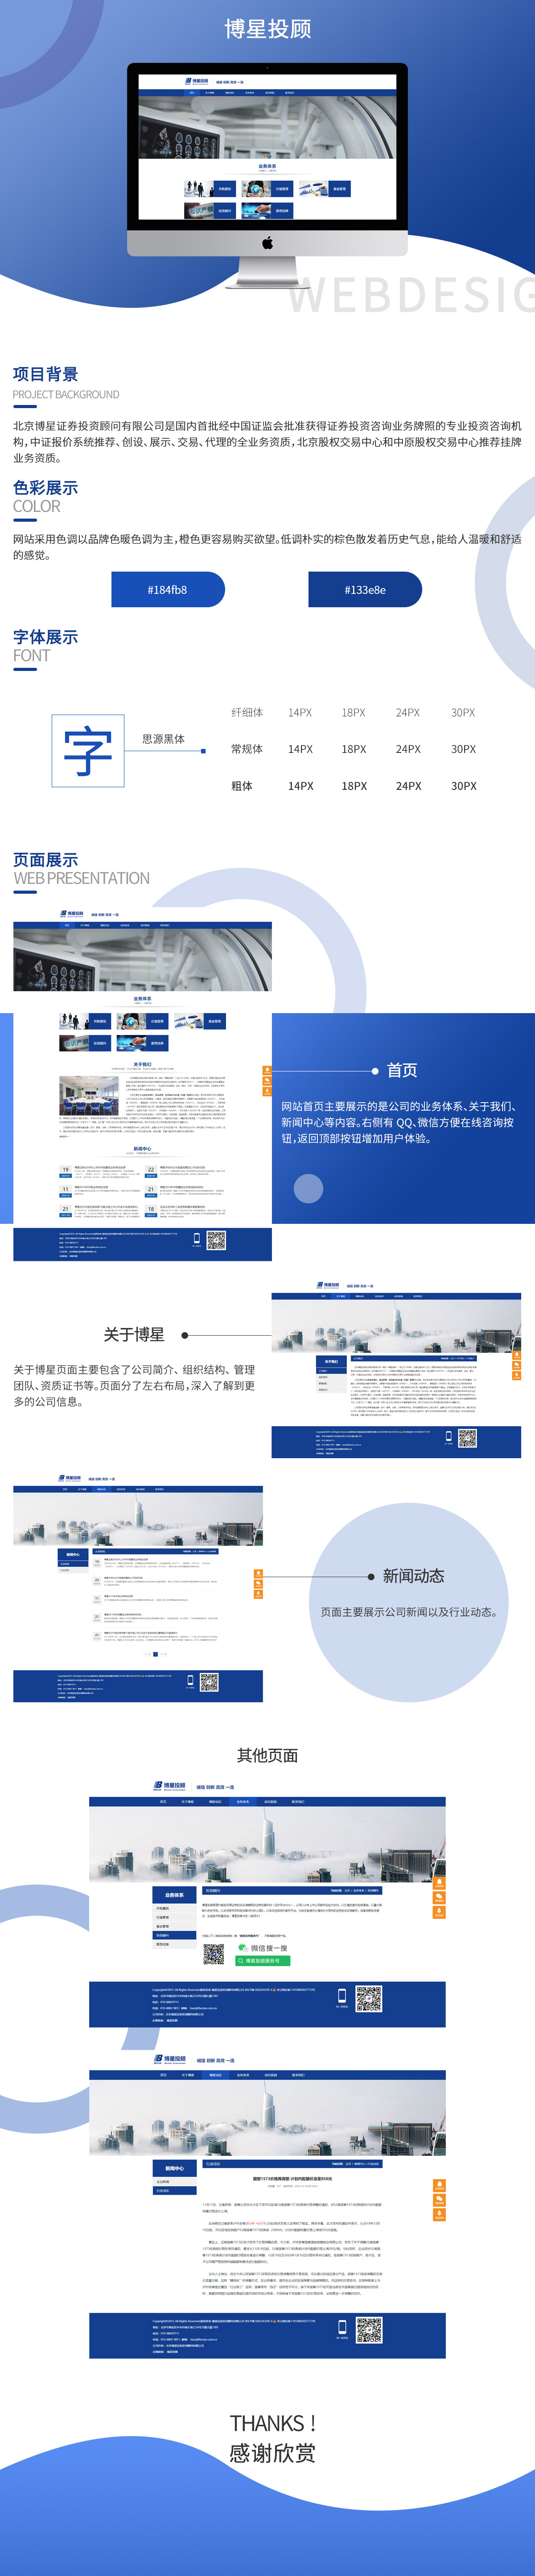 北京博星证券投资顾问有限公司品牌网站案例